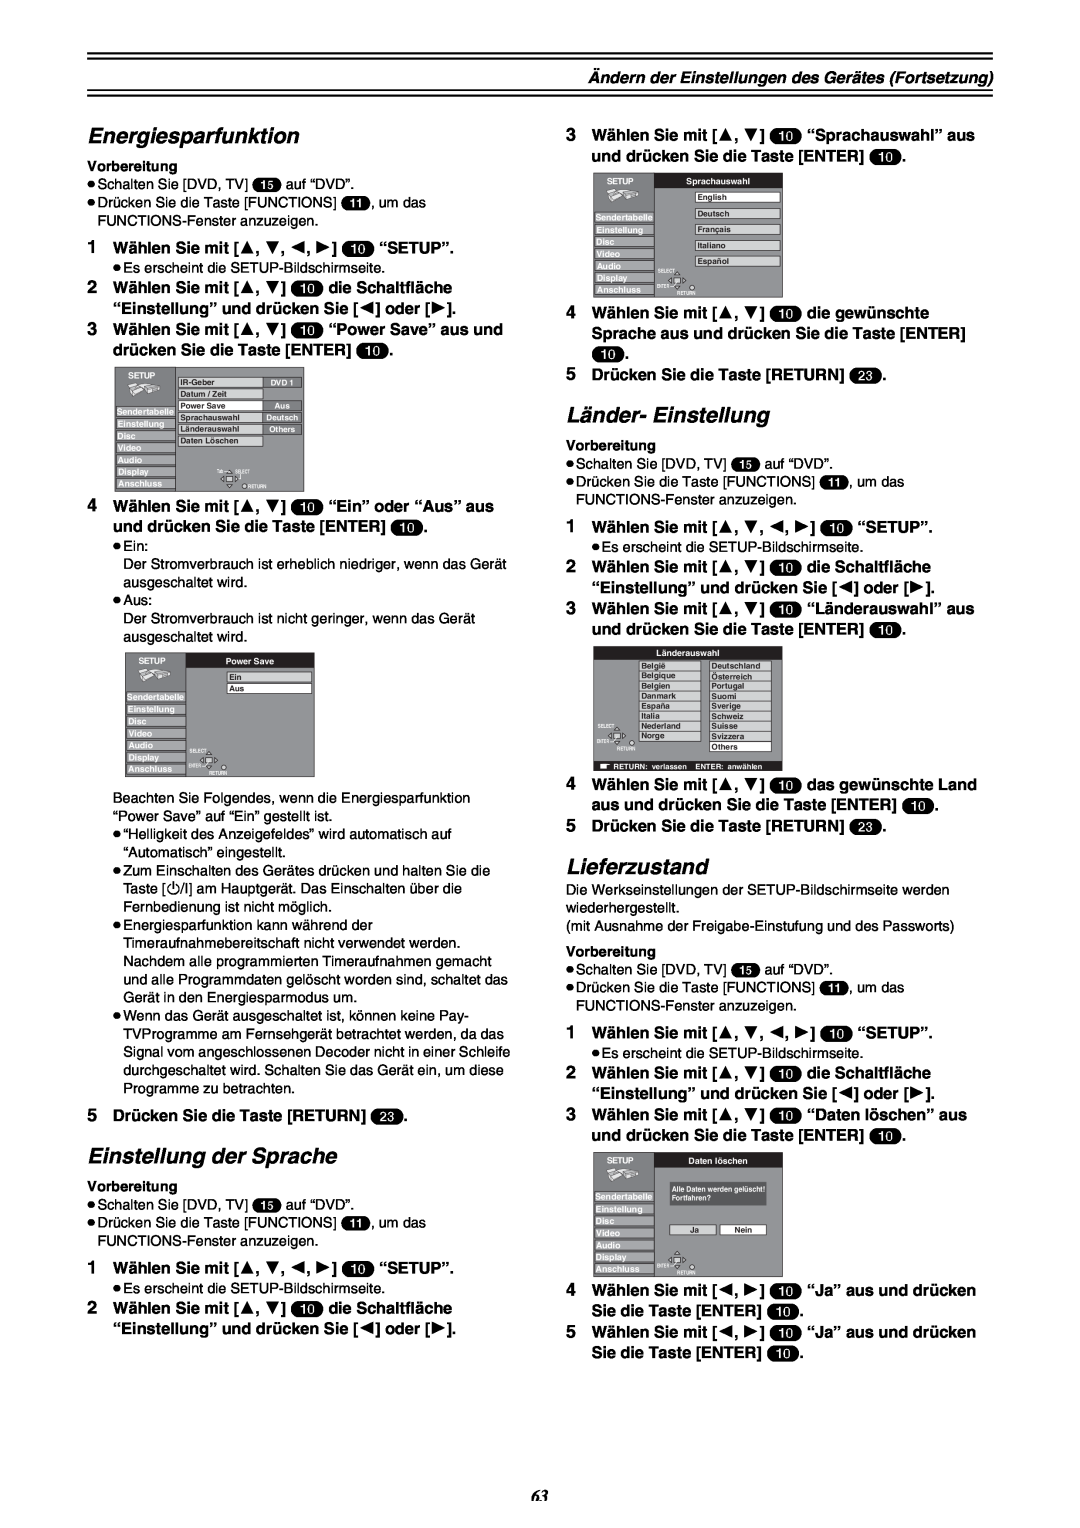 Panasonic DMR-E30 manual Energiesparfunktion, Einstellung der Sprache, Länder- Einstellung, Lieferzustand 